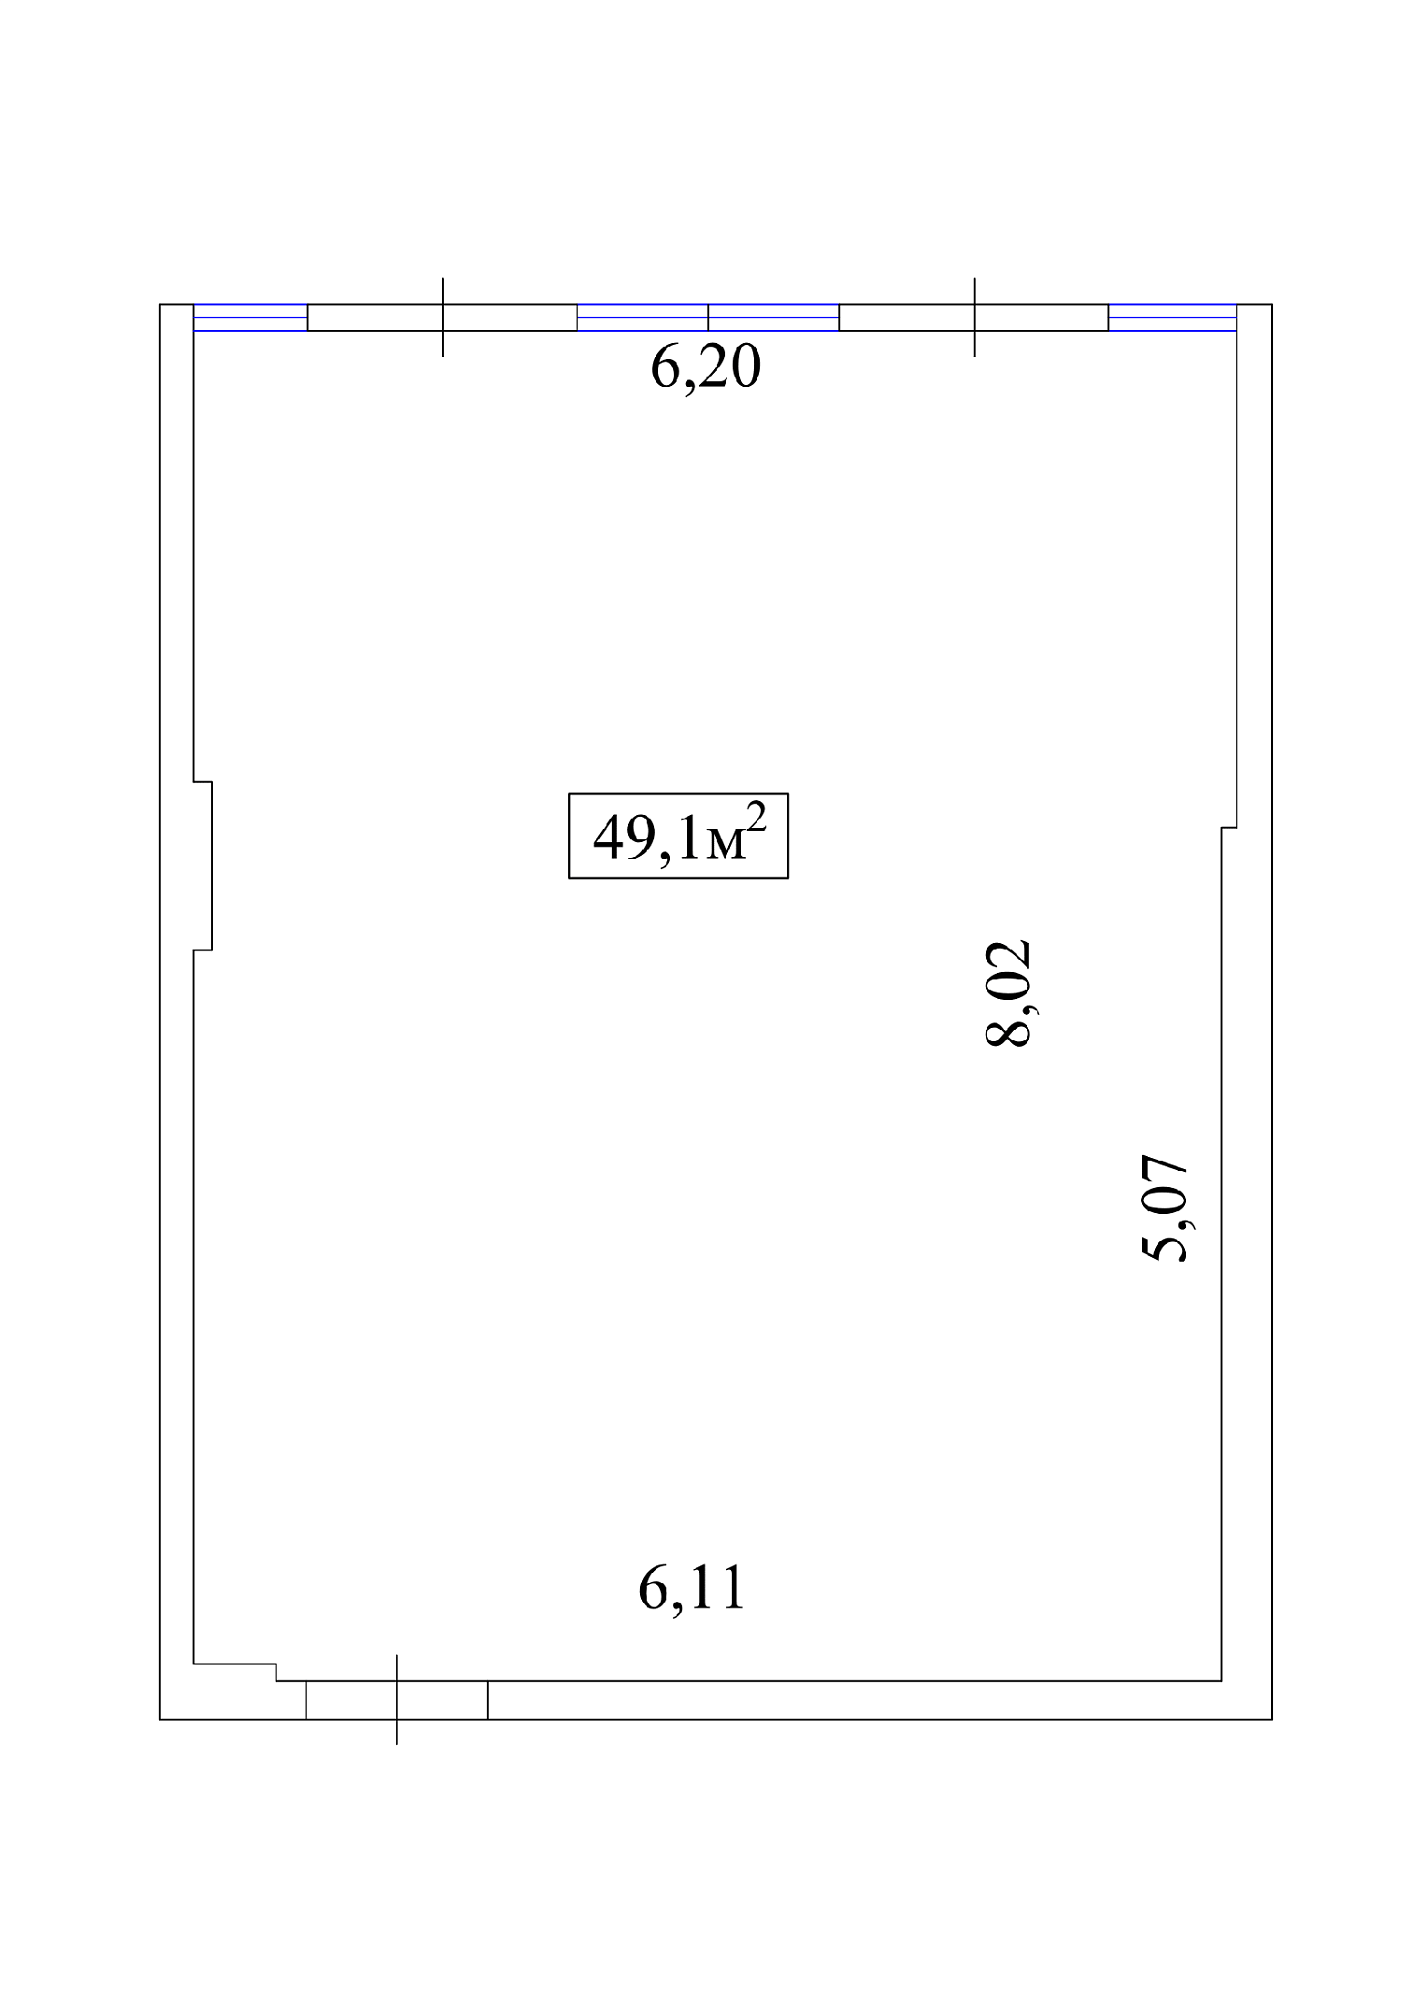 Планировка Коммерческие площей 49.1м2, AB-01-01/Т005б.